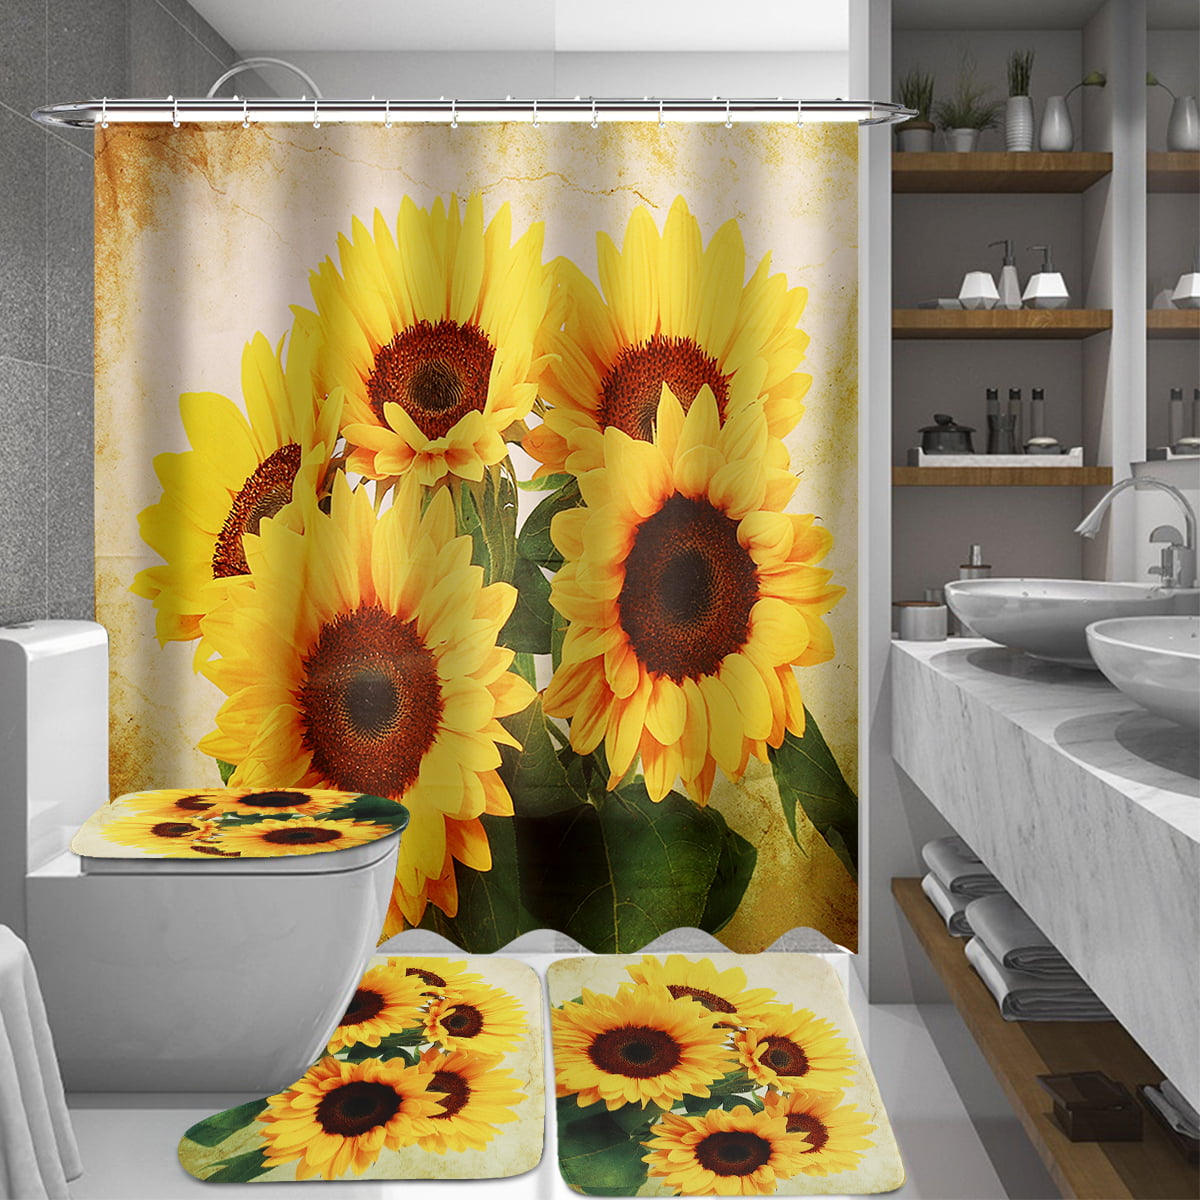 2021 Sunflower Bathroom Shower Curtain Bath Toilet Lid Cover Rug Set Home Decor 